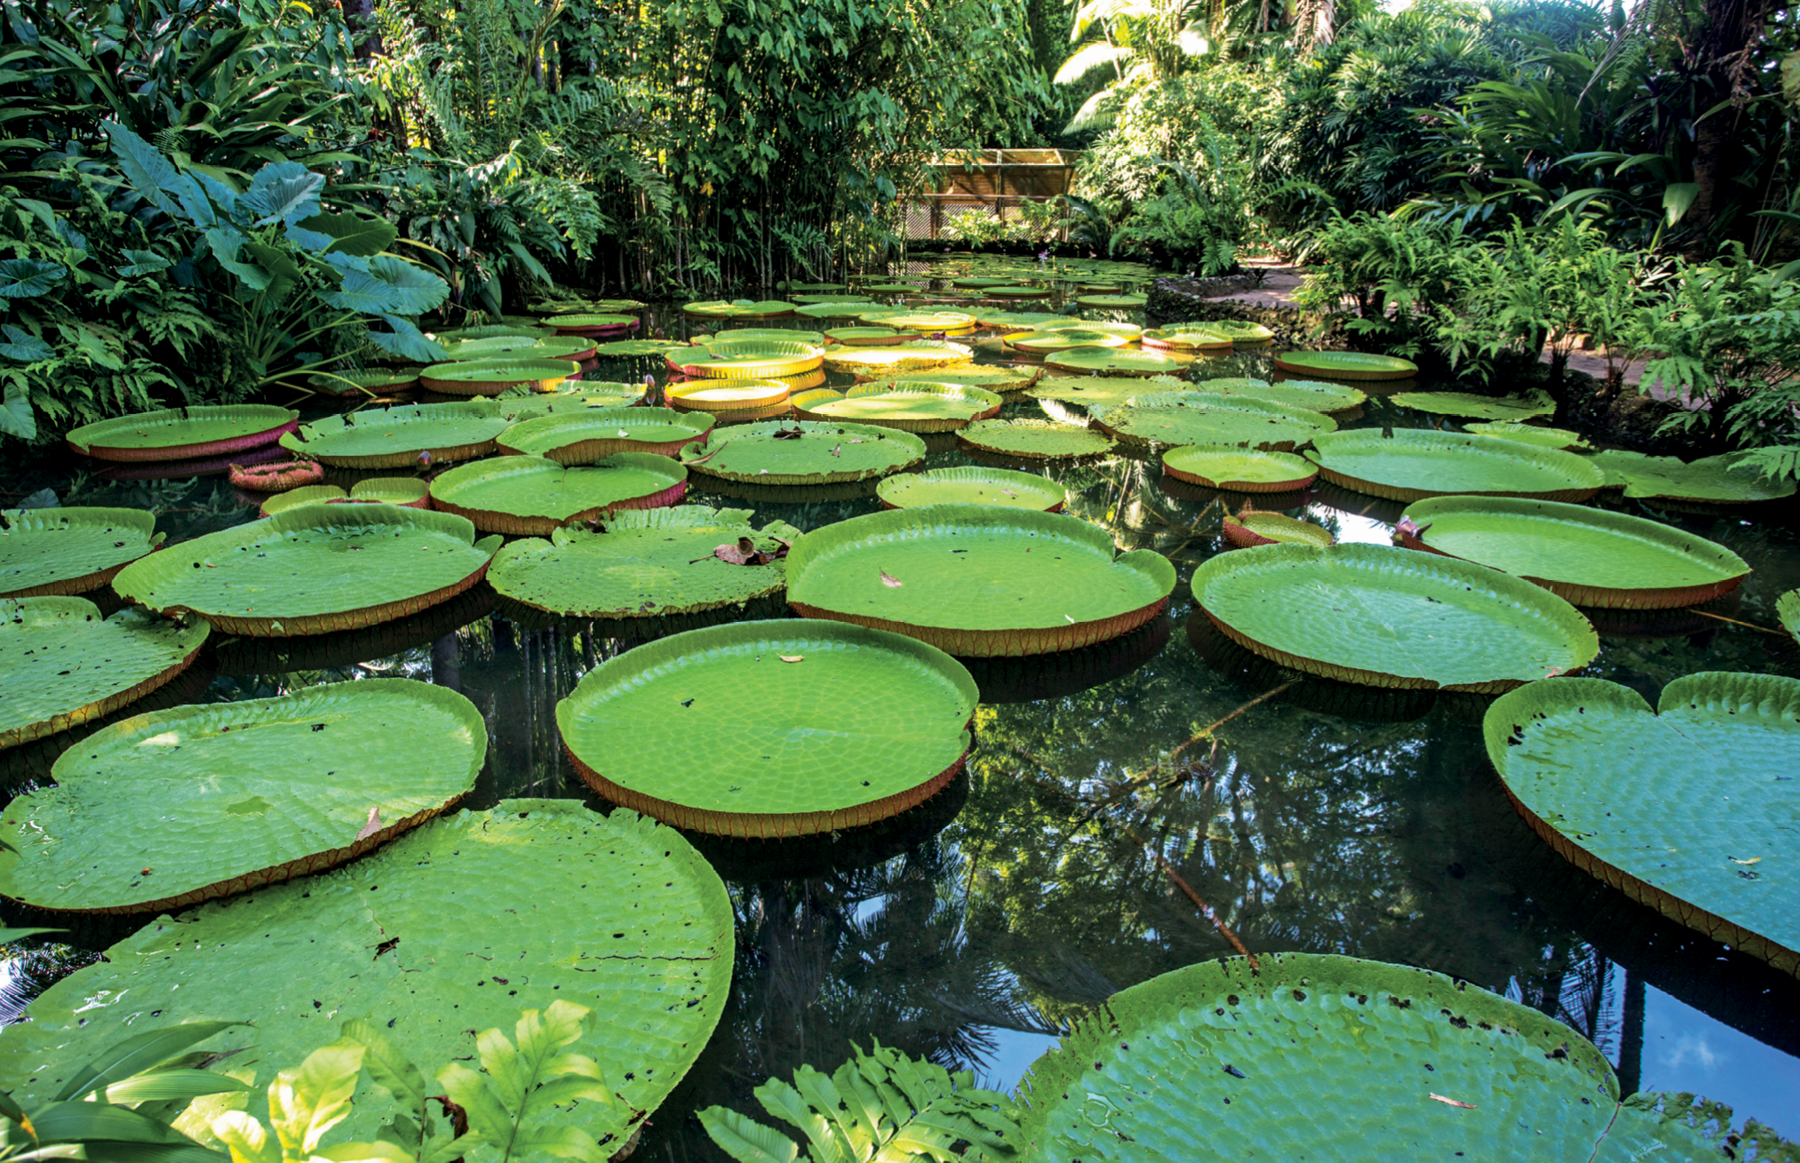 Fotografia. Vista aproximada de um lago com água parada e quase toda coberta por vitórias-régias, plantas em forma de círculo na cor verde. Nas margens e ao fundo, há densa vegetação.